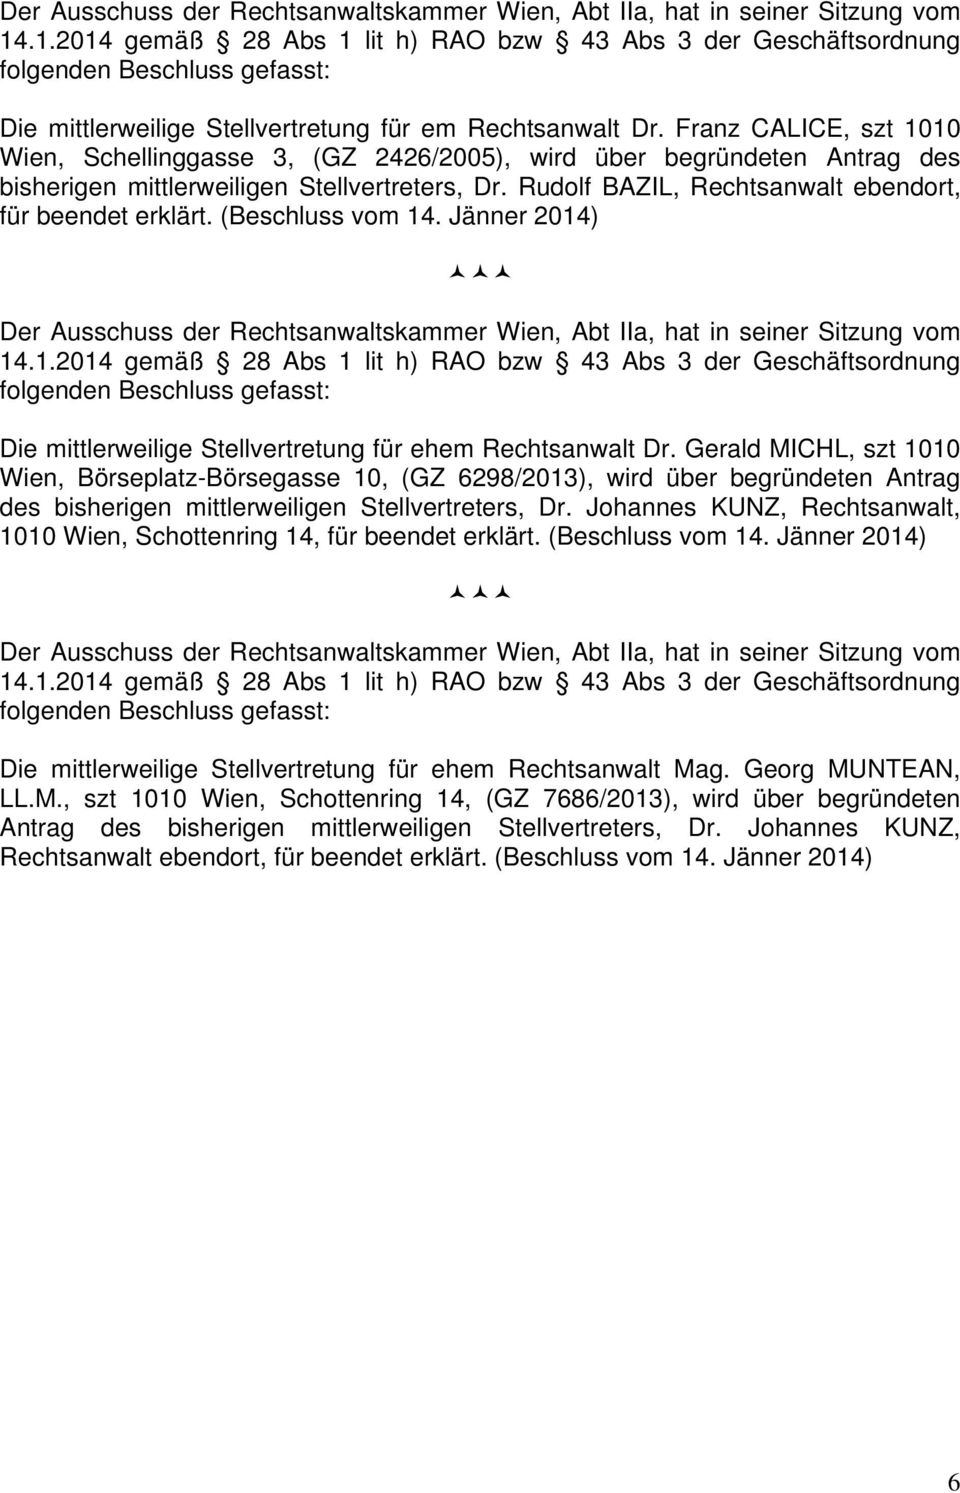 Rudolf BAZIL, Rechtsanwalt ebendort, für beendet erklärt. (Beschluss vom 14. Jänner 2014) Die mittlerweilige Stellvertretung für ehem Rechtsanwalt Dr.